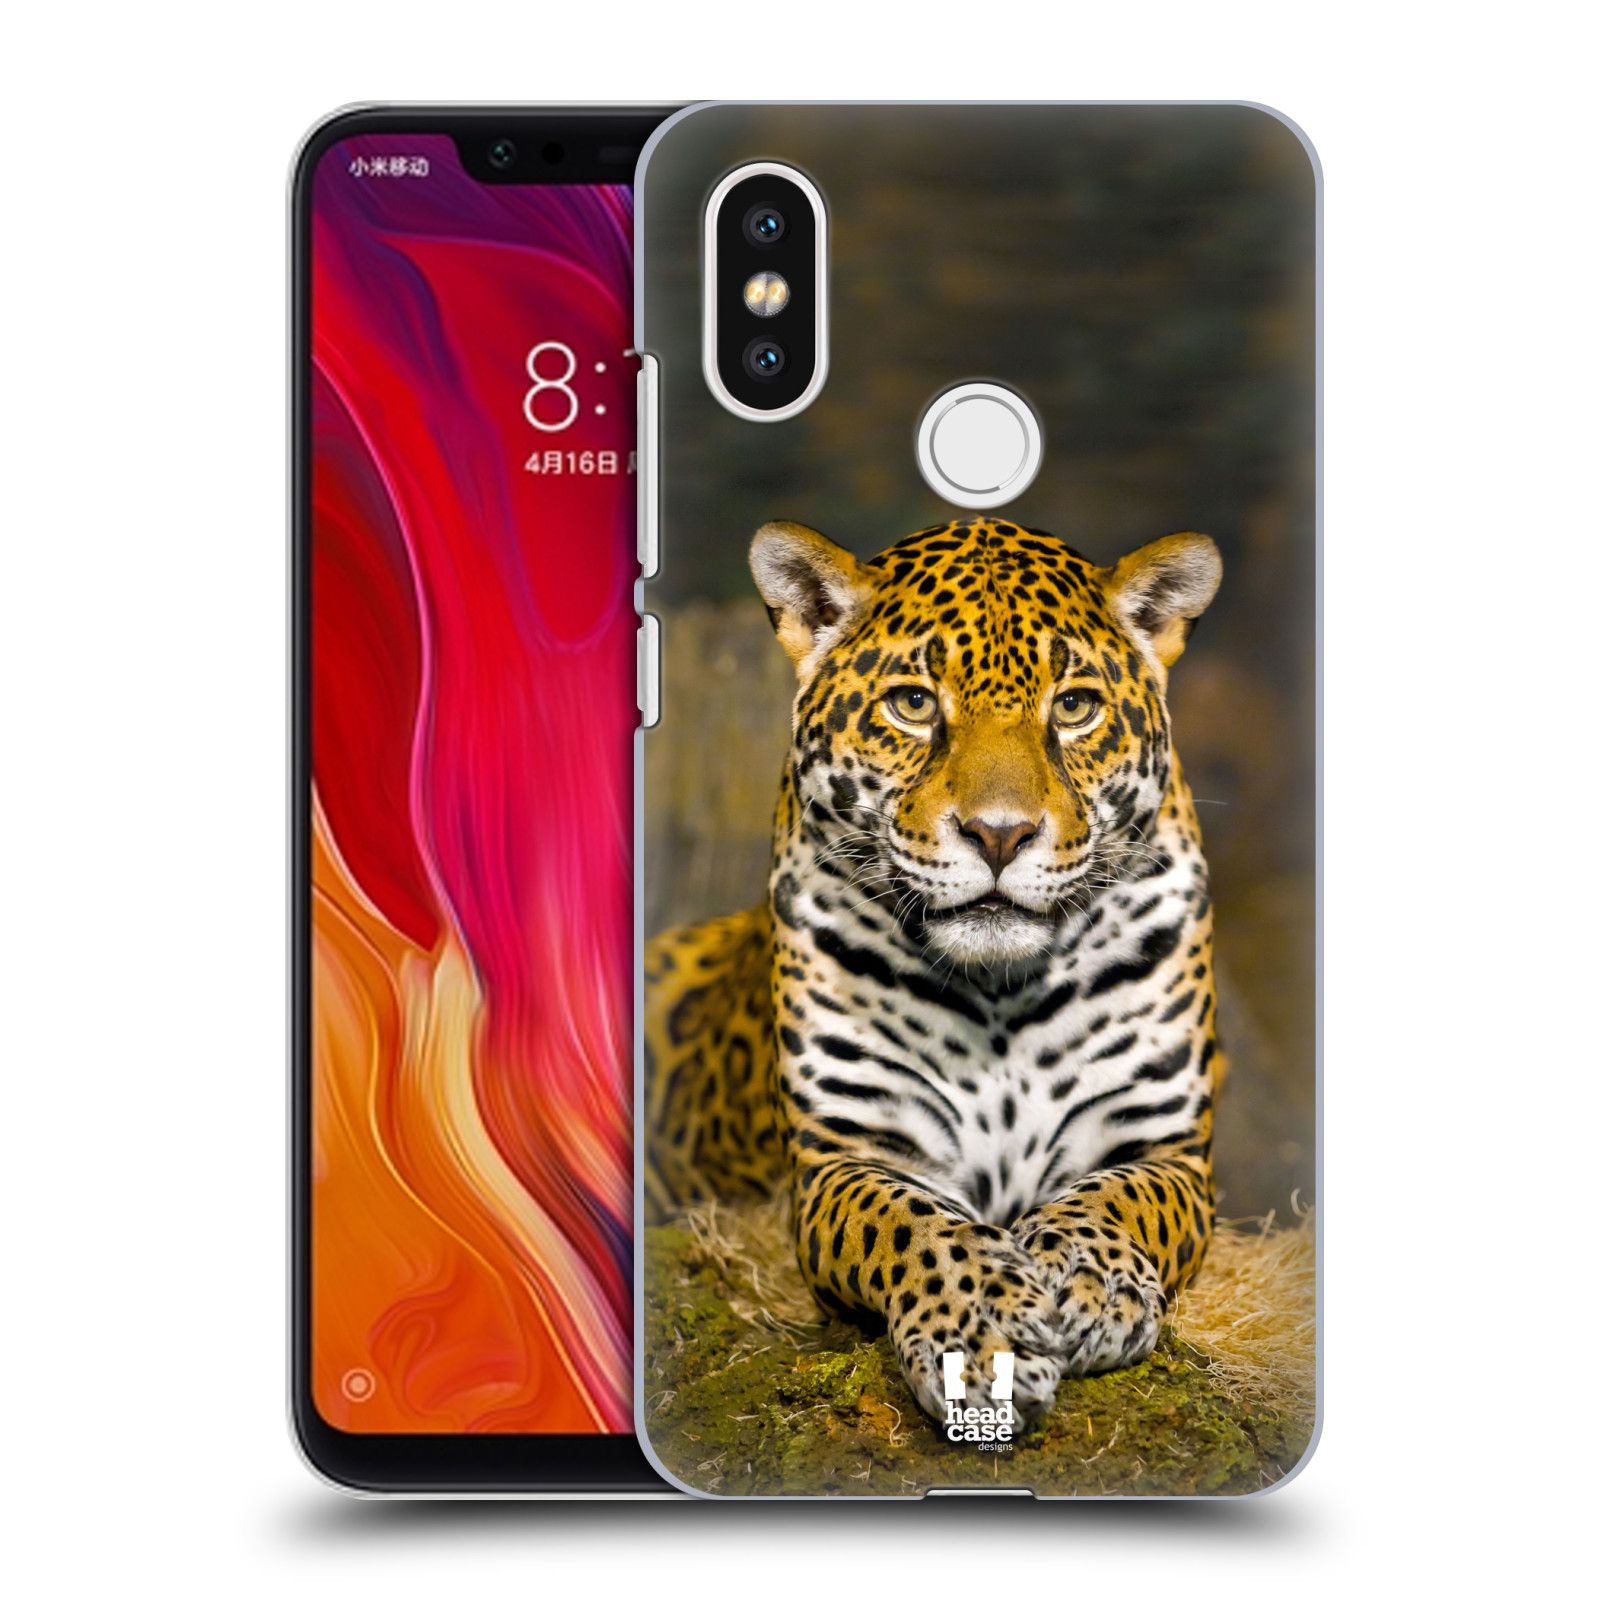 HEAD CASE plastový obal na mobil Xiaomi Mi 8 vzor slavná zvířata foto jaguár